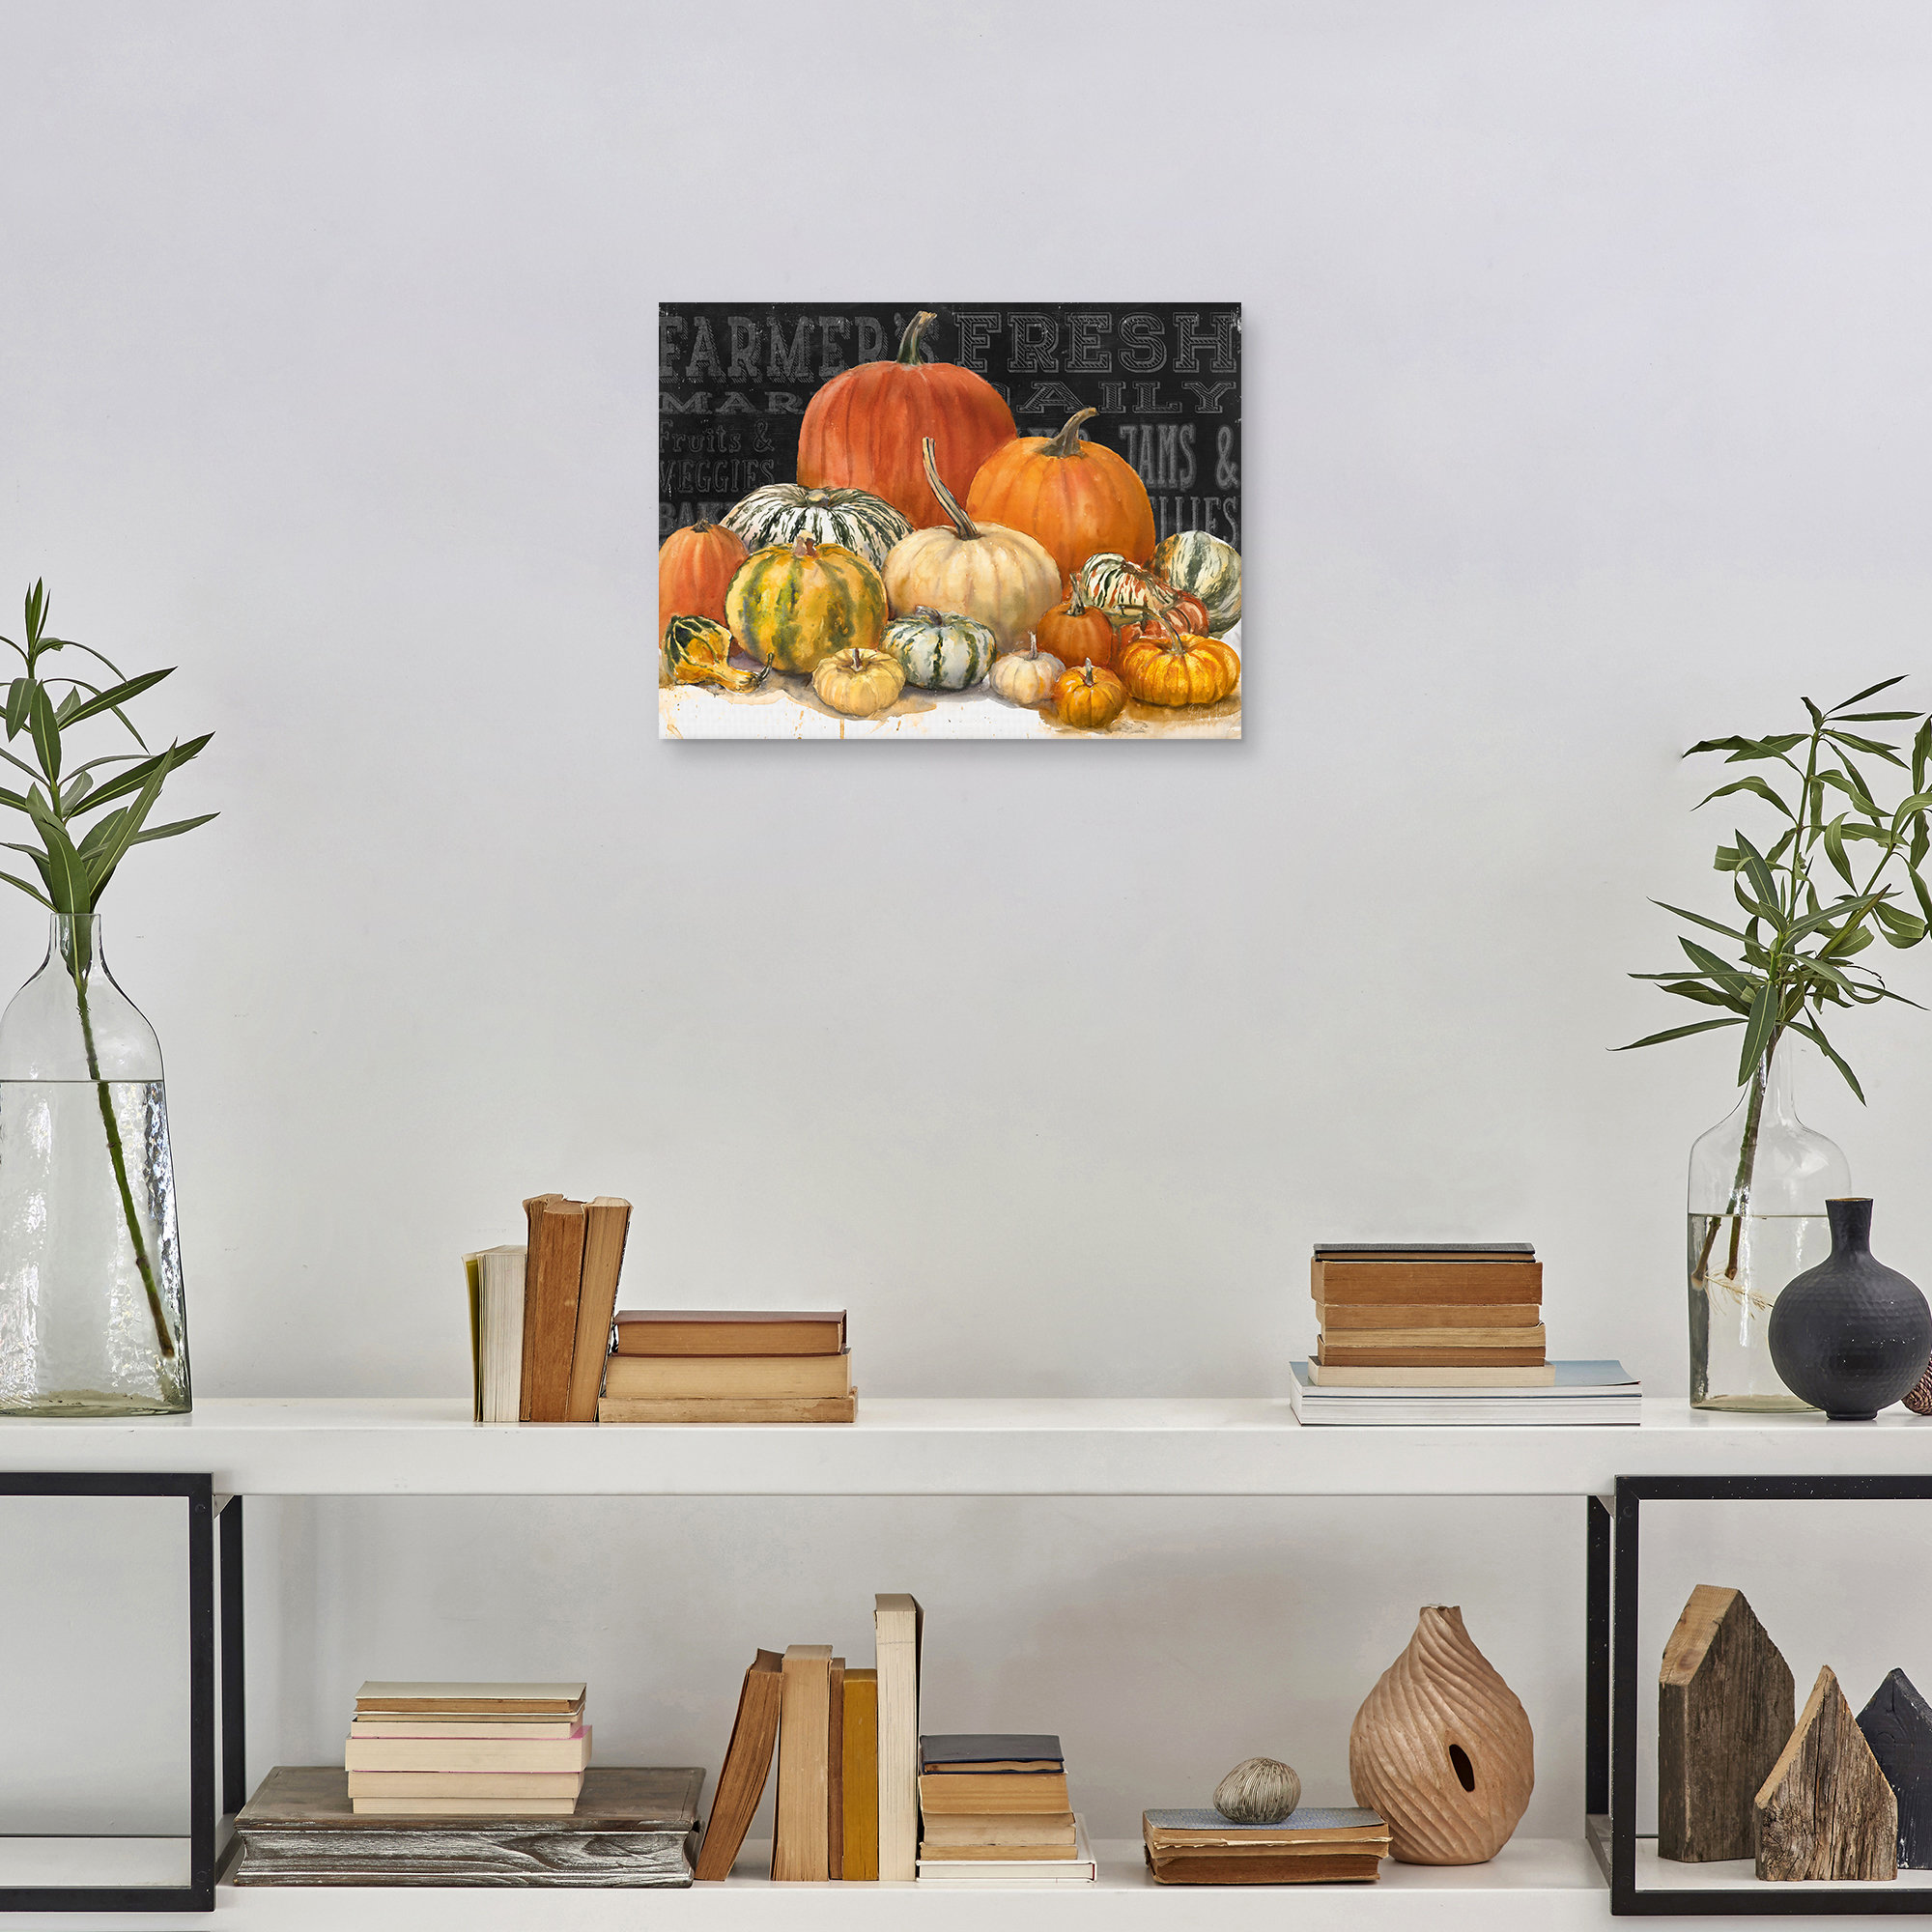 https://assets.wfcdn.com/im/38528196/compr-r85/1298/129888958/pumpkin-valley-black-on-canvas-by-geoff-allen-print.jpg